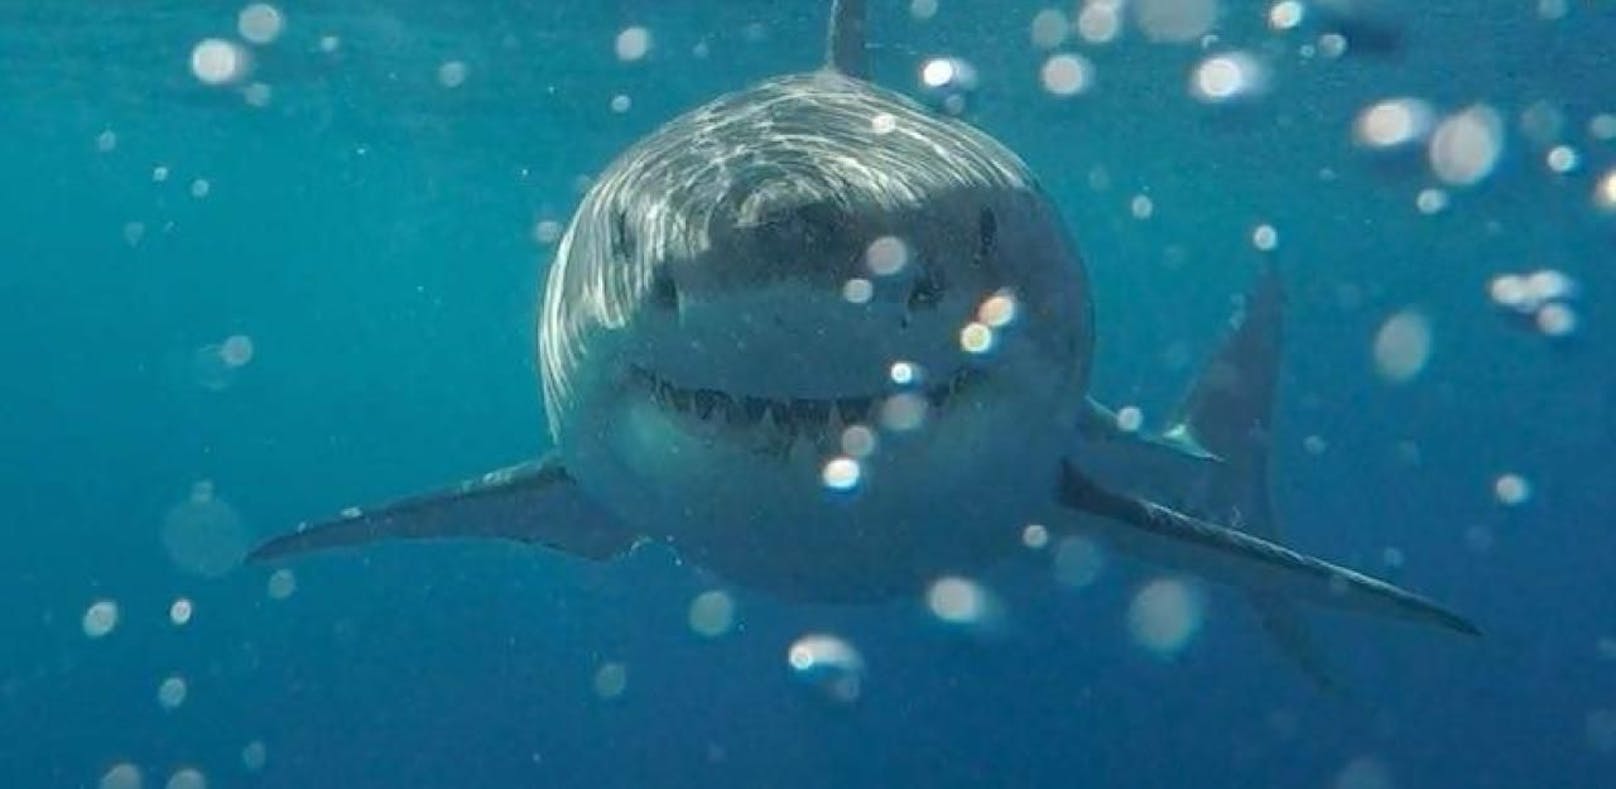 Hai tötet Surferin vor den Augen der Familie